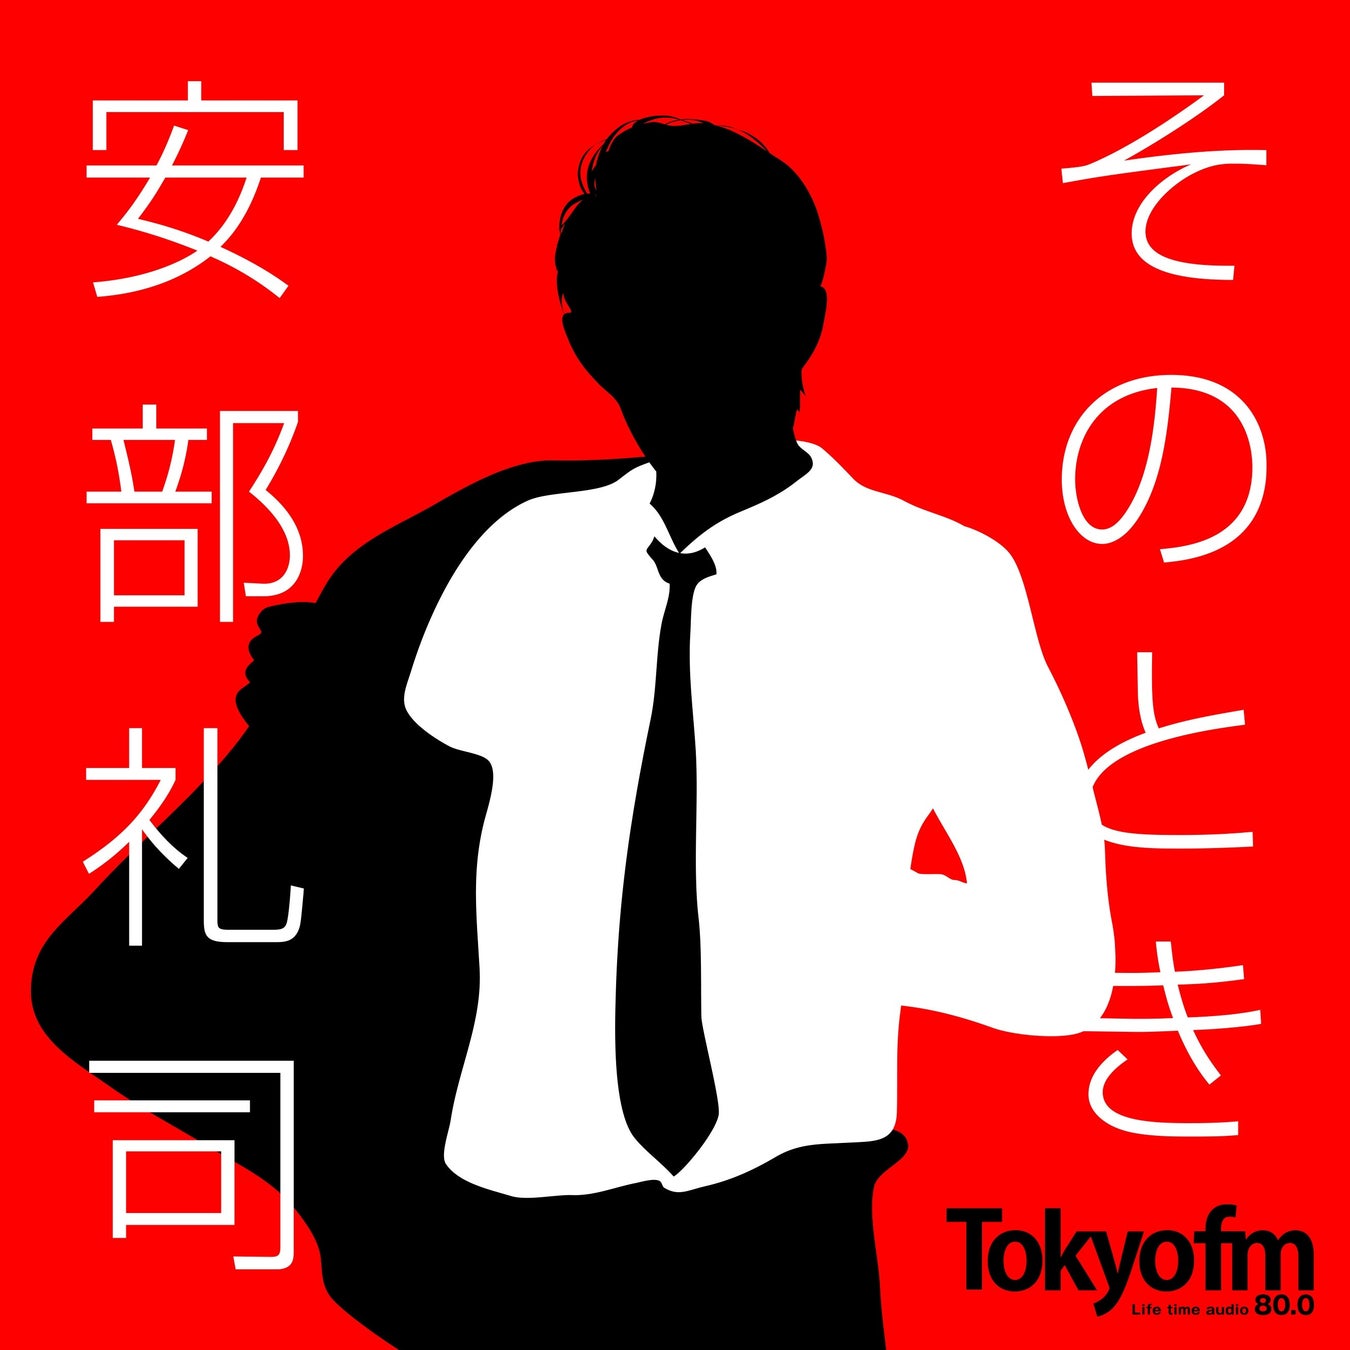 ラジオドラマ『安部礼司』のSpotifyコンテンツに小野大輔が登場『NISSANあ、安部礼司-BEYOND THE AVERAGE-』のサブ画像2